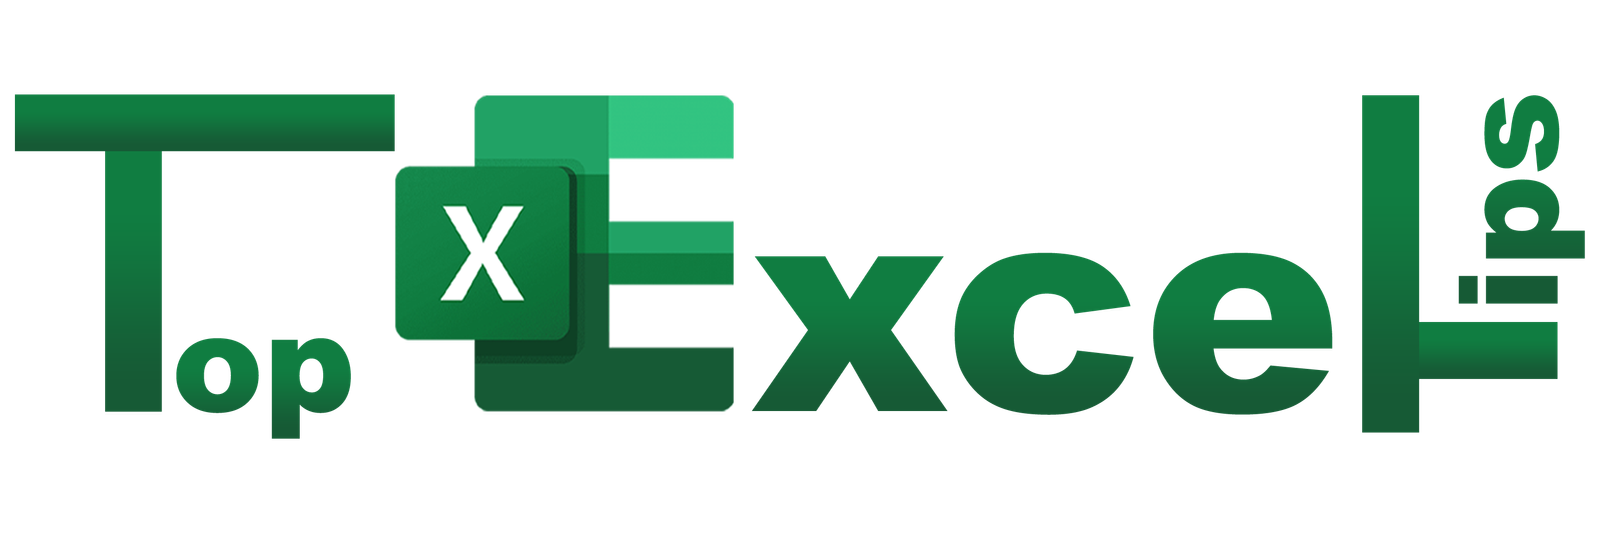 Top Excel Tips